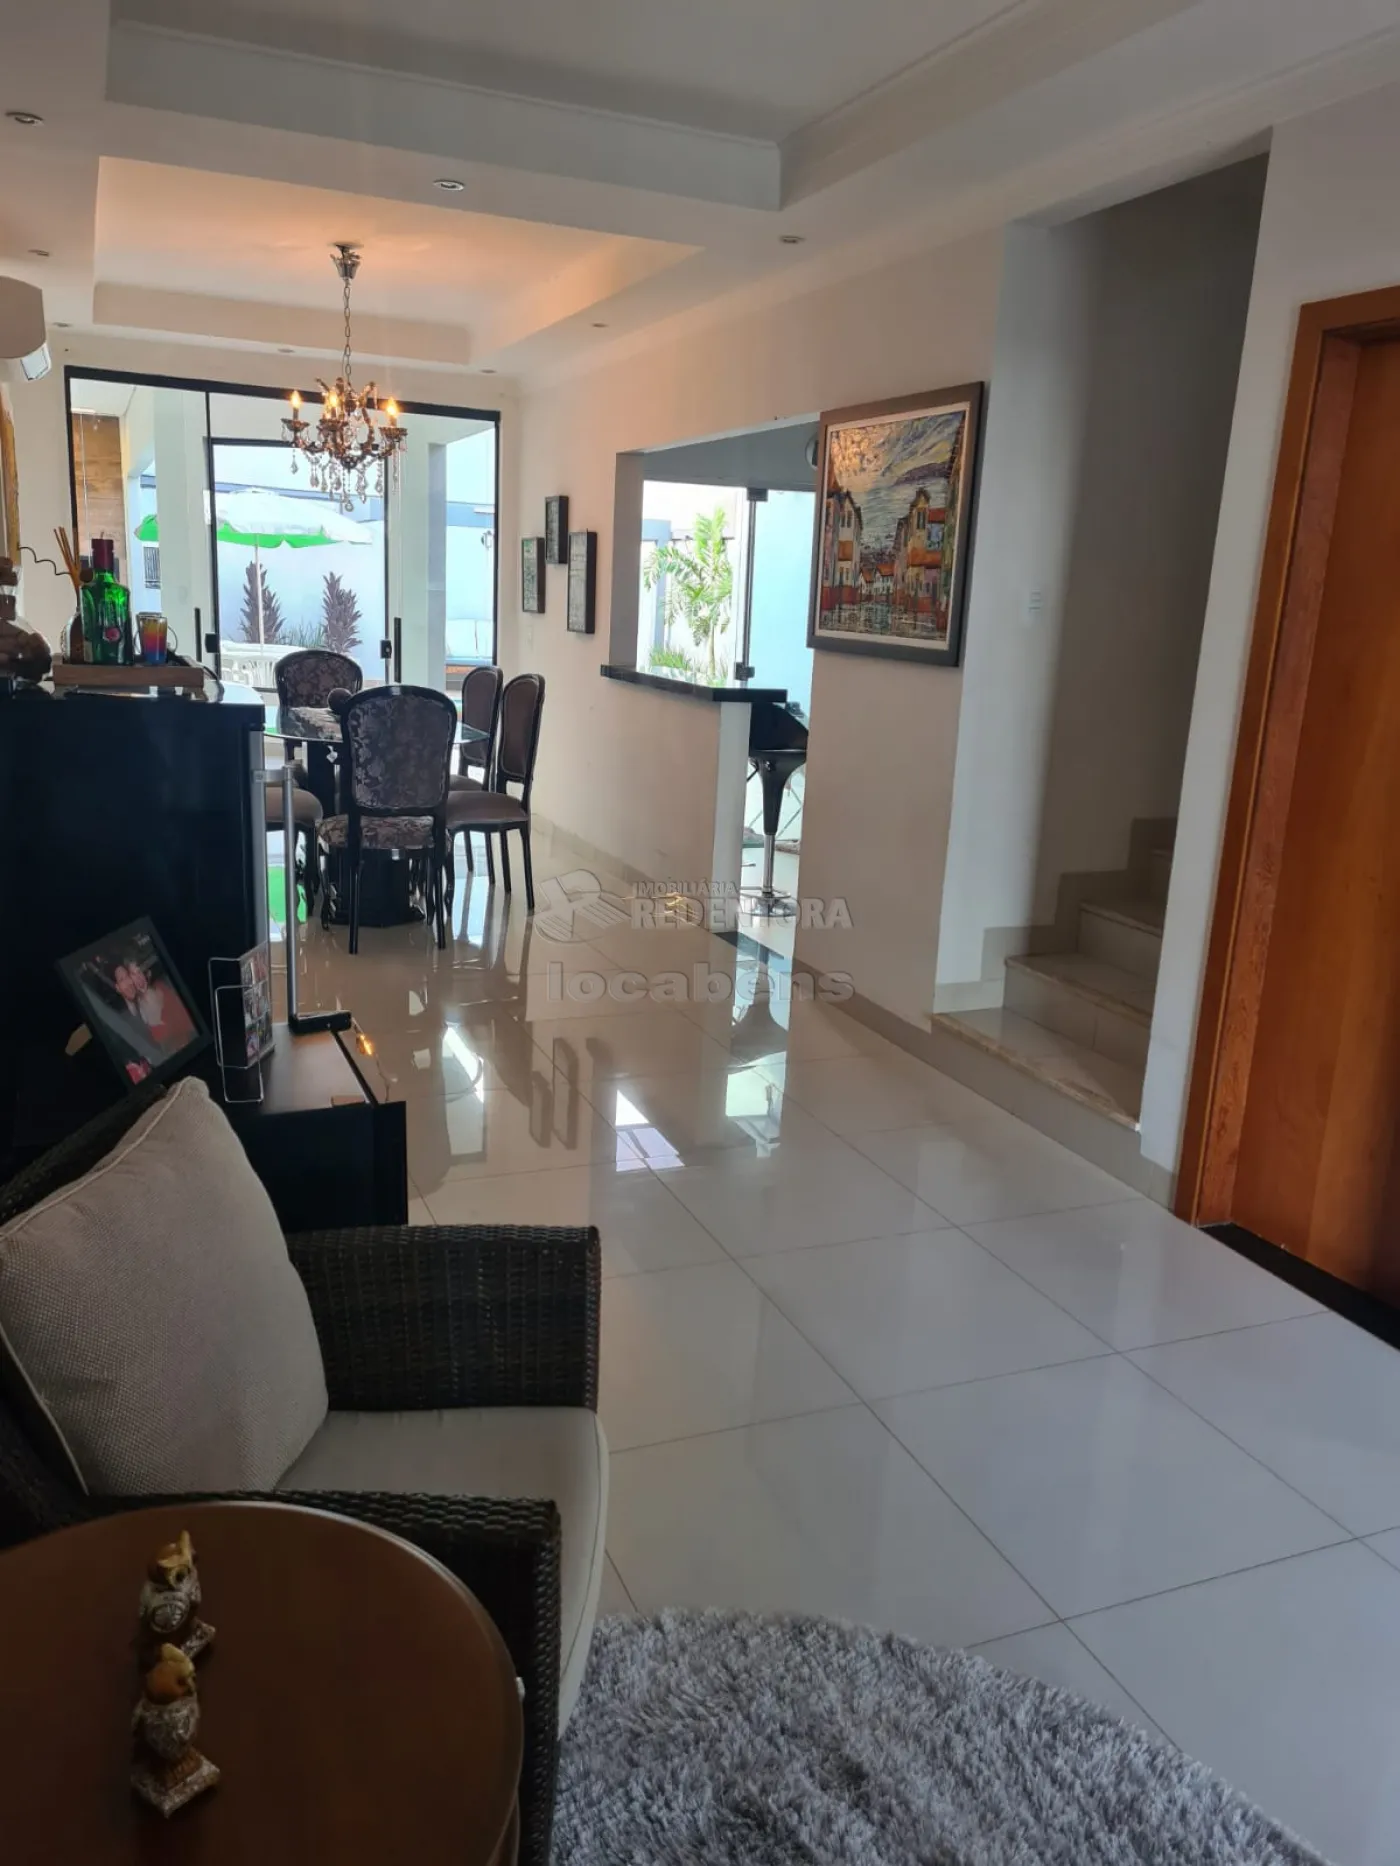 Comprar Casa / Condomínio em Mirassol apenas R$ 1.290.000,00 - Foto 7